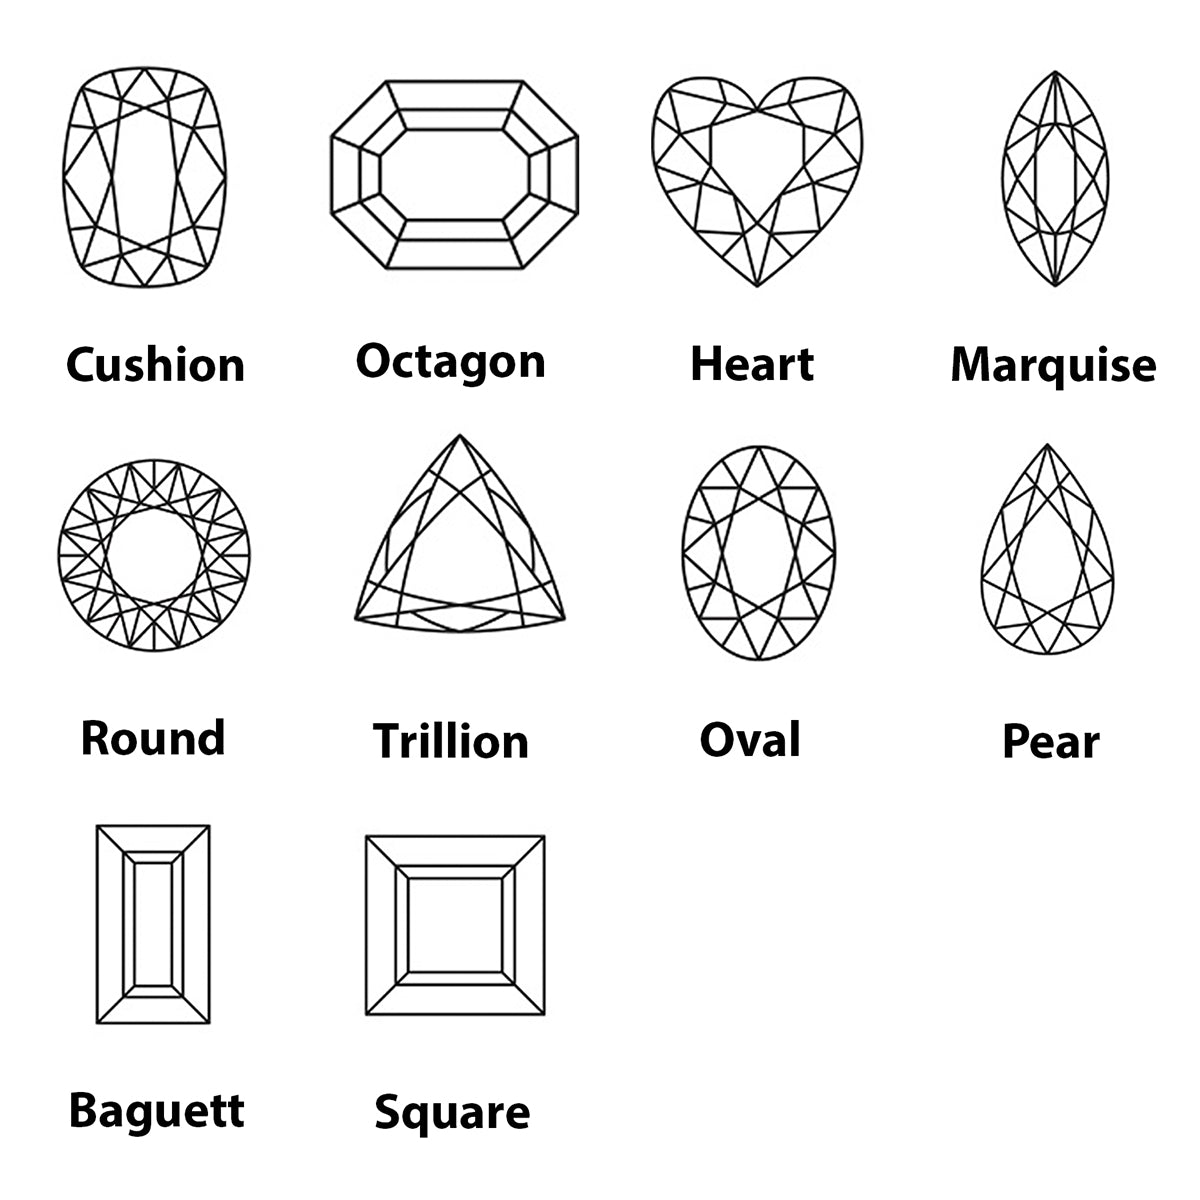 riyogems 1pc レッド ガーネット カボション 14x14 mm 正方形の形状の驚くべき品質のルース宝石